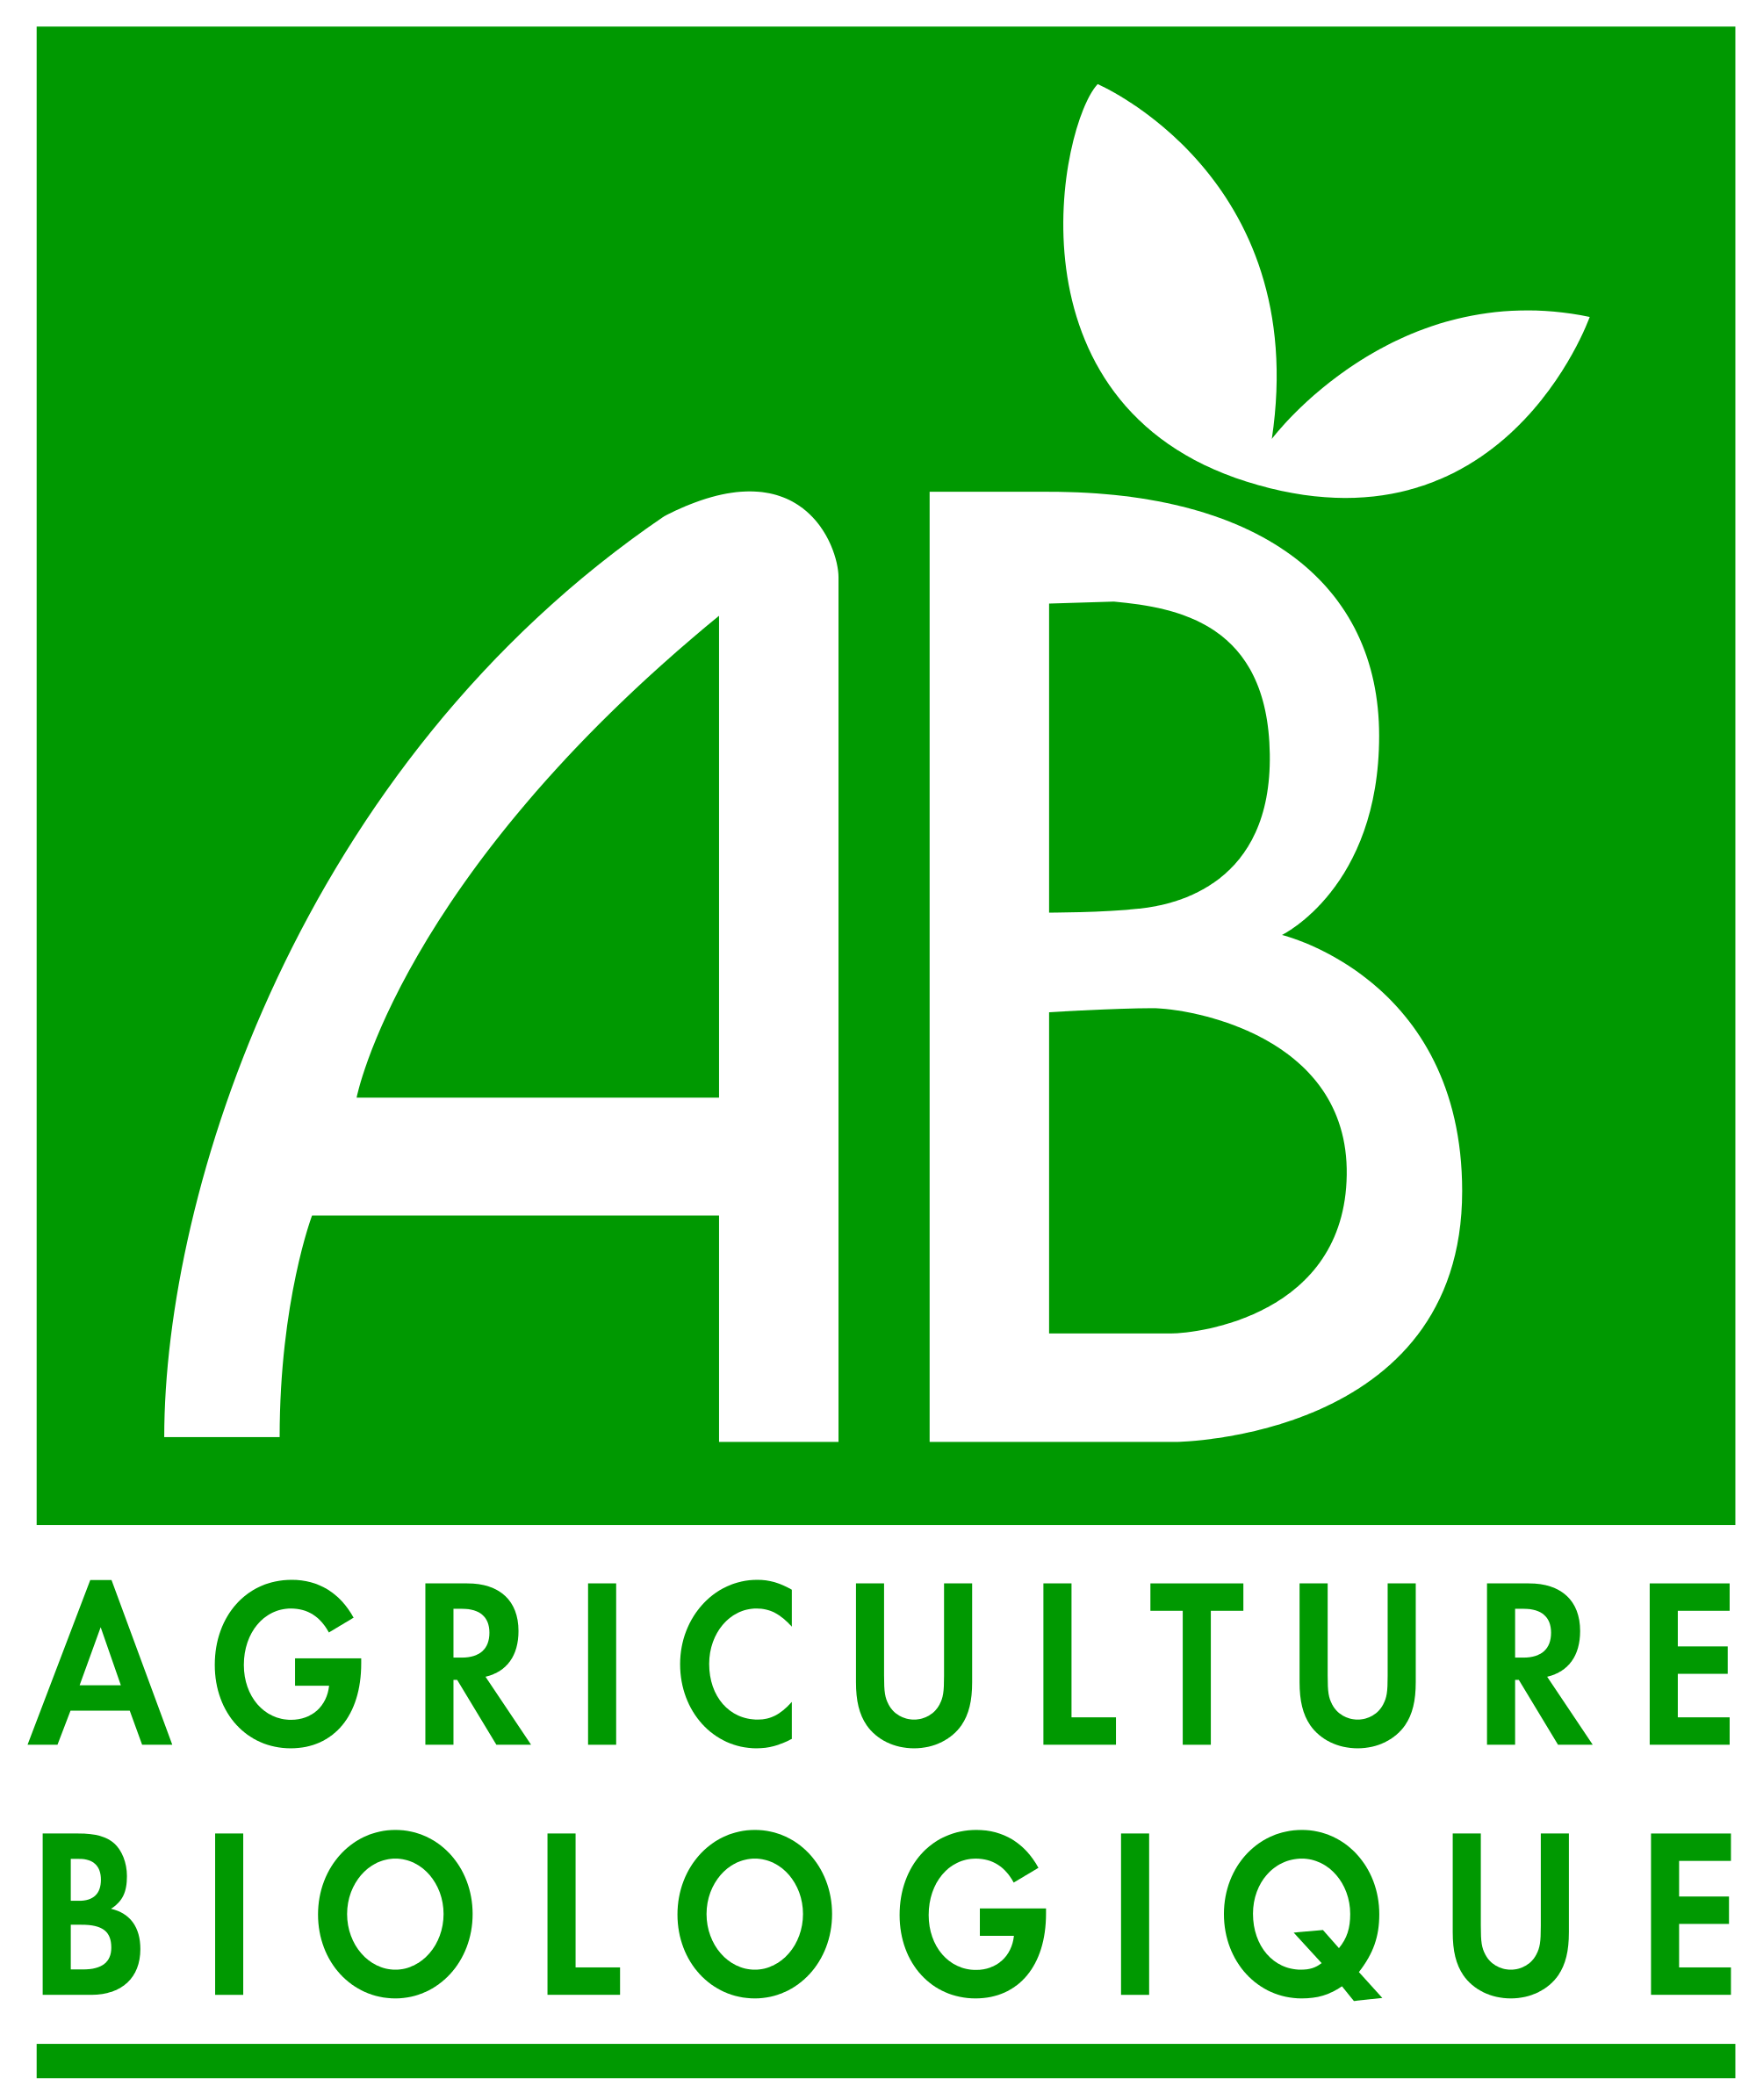 Сертификат Agriculture Biologique - интернет-магазин эфирных масел Romata.ru